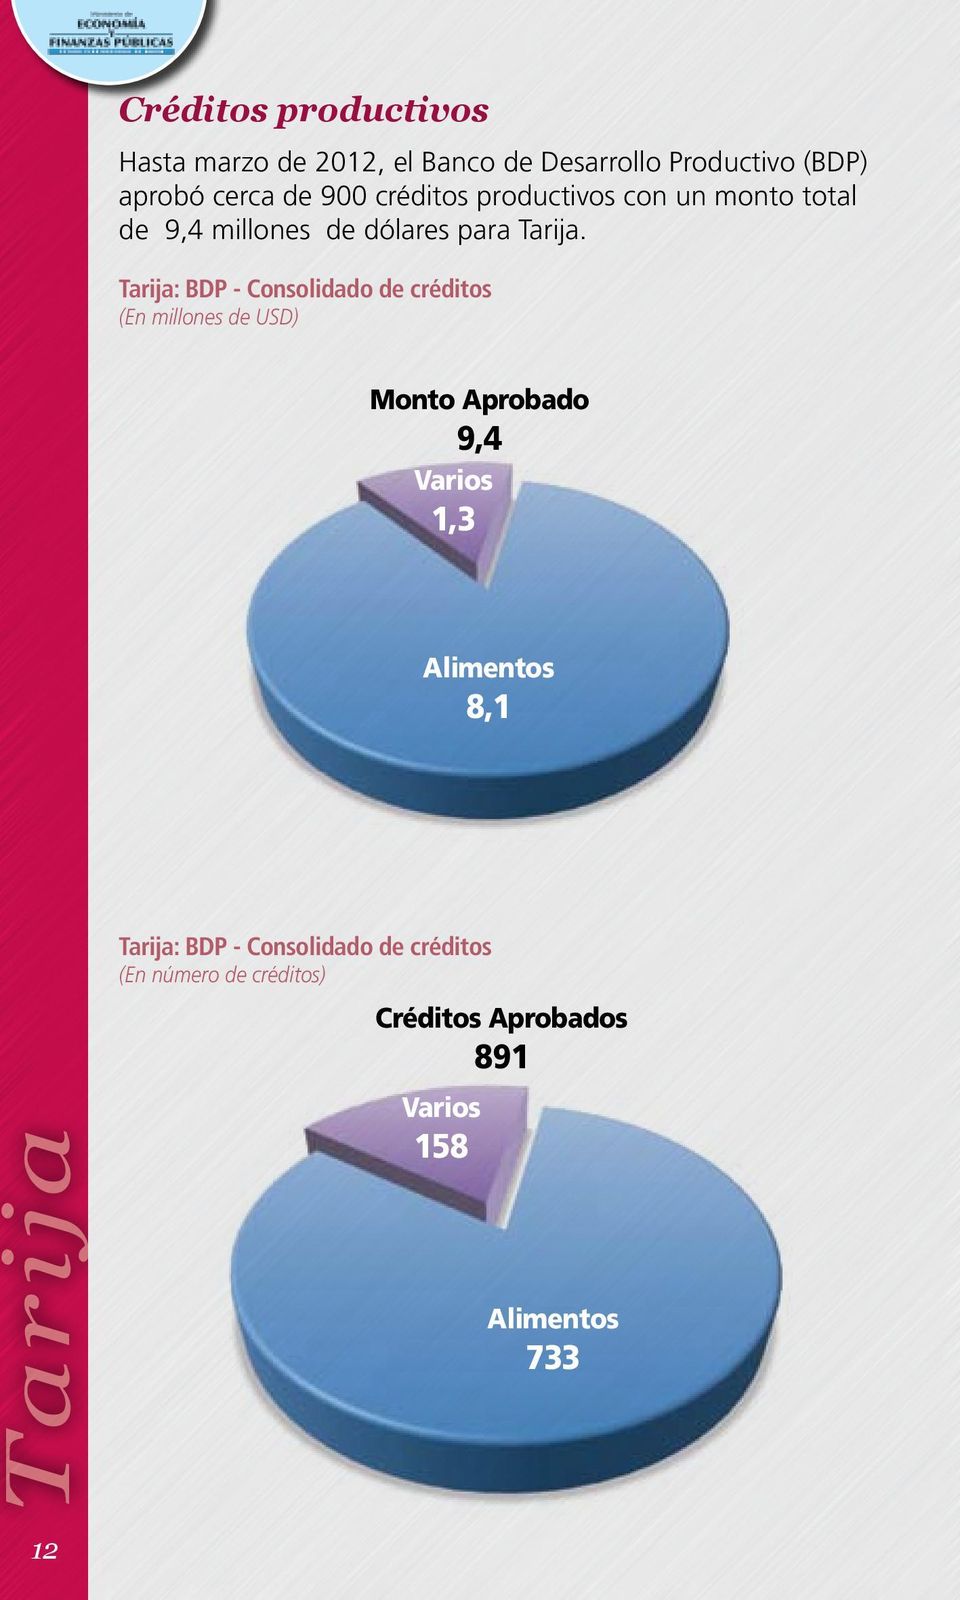 Tarija: BDP - Consolidado de créditos (En millones de USD) Monto Aprobado 9,4 Varios 1,3 Alimentos